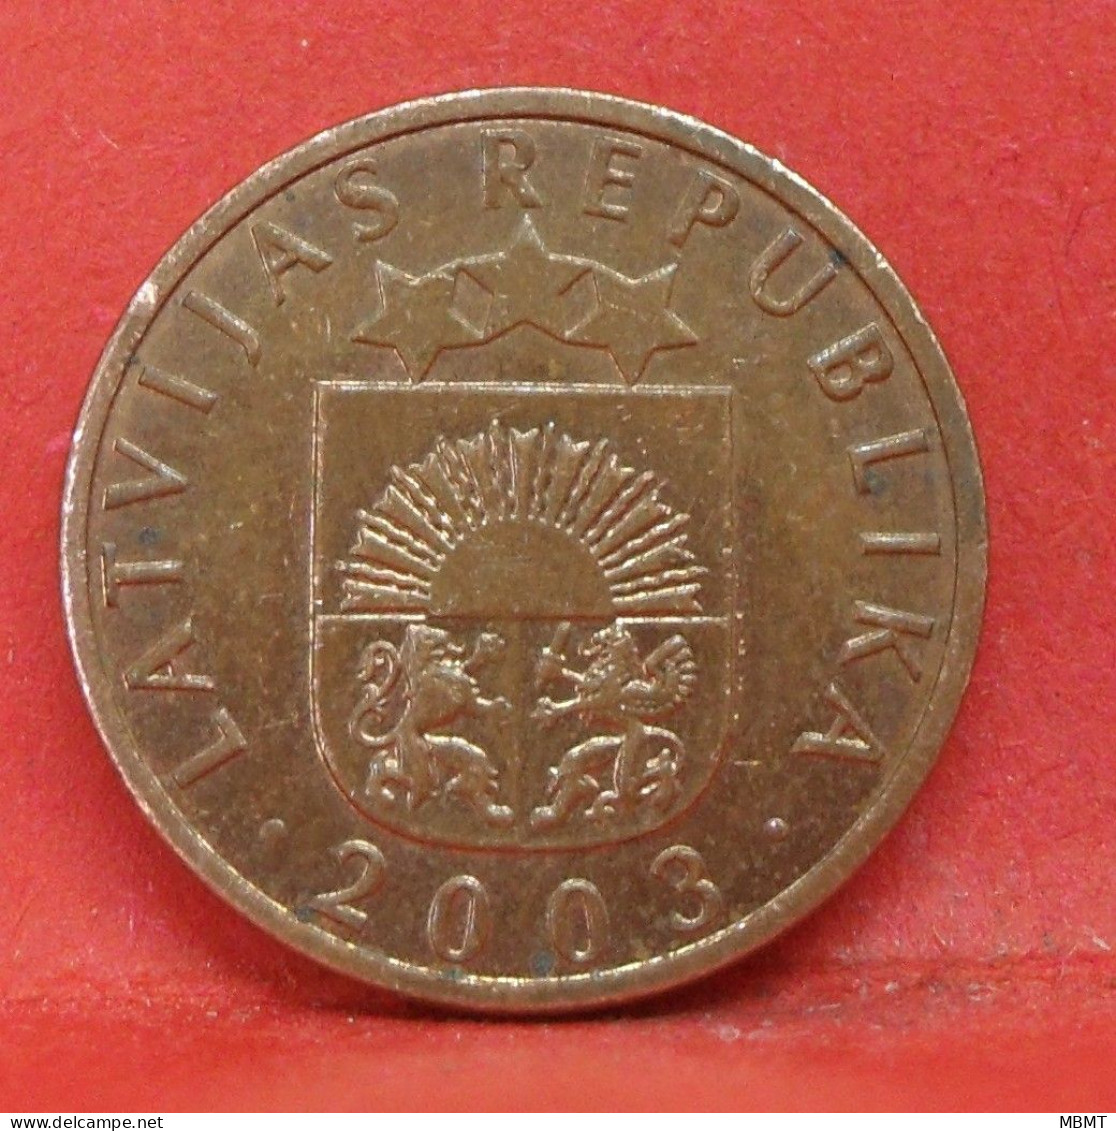 1 Santims 2003 - TTB - Pièce De Monnaie Lettonie - Article N°3631 - Lettonie